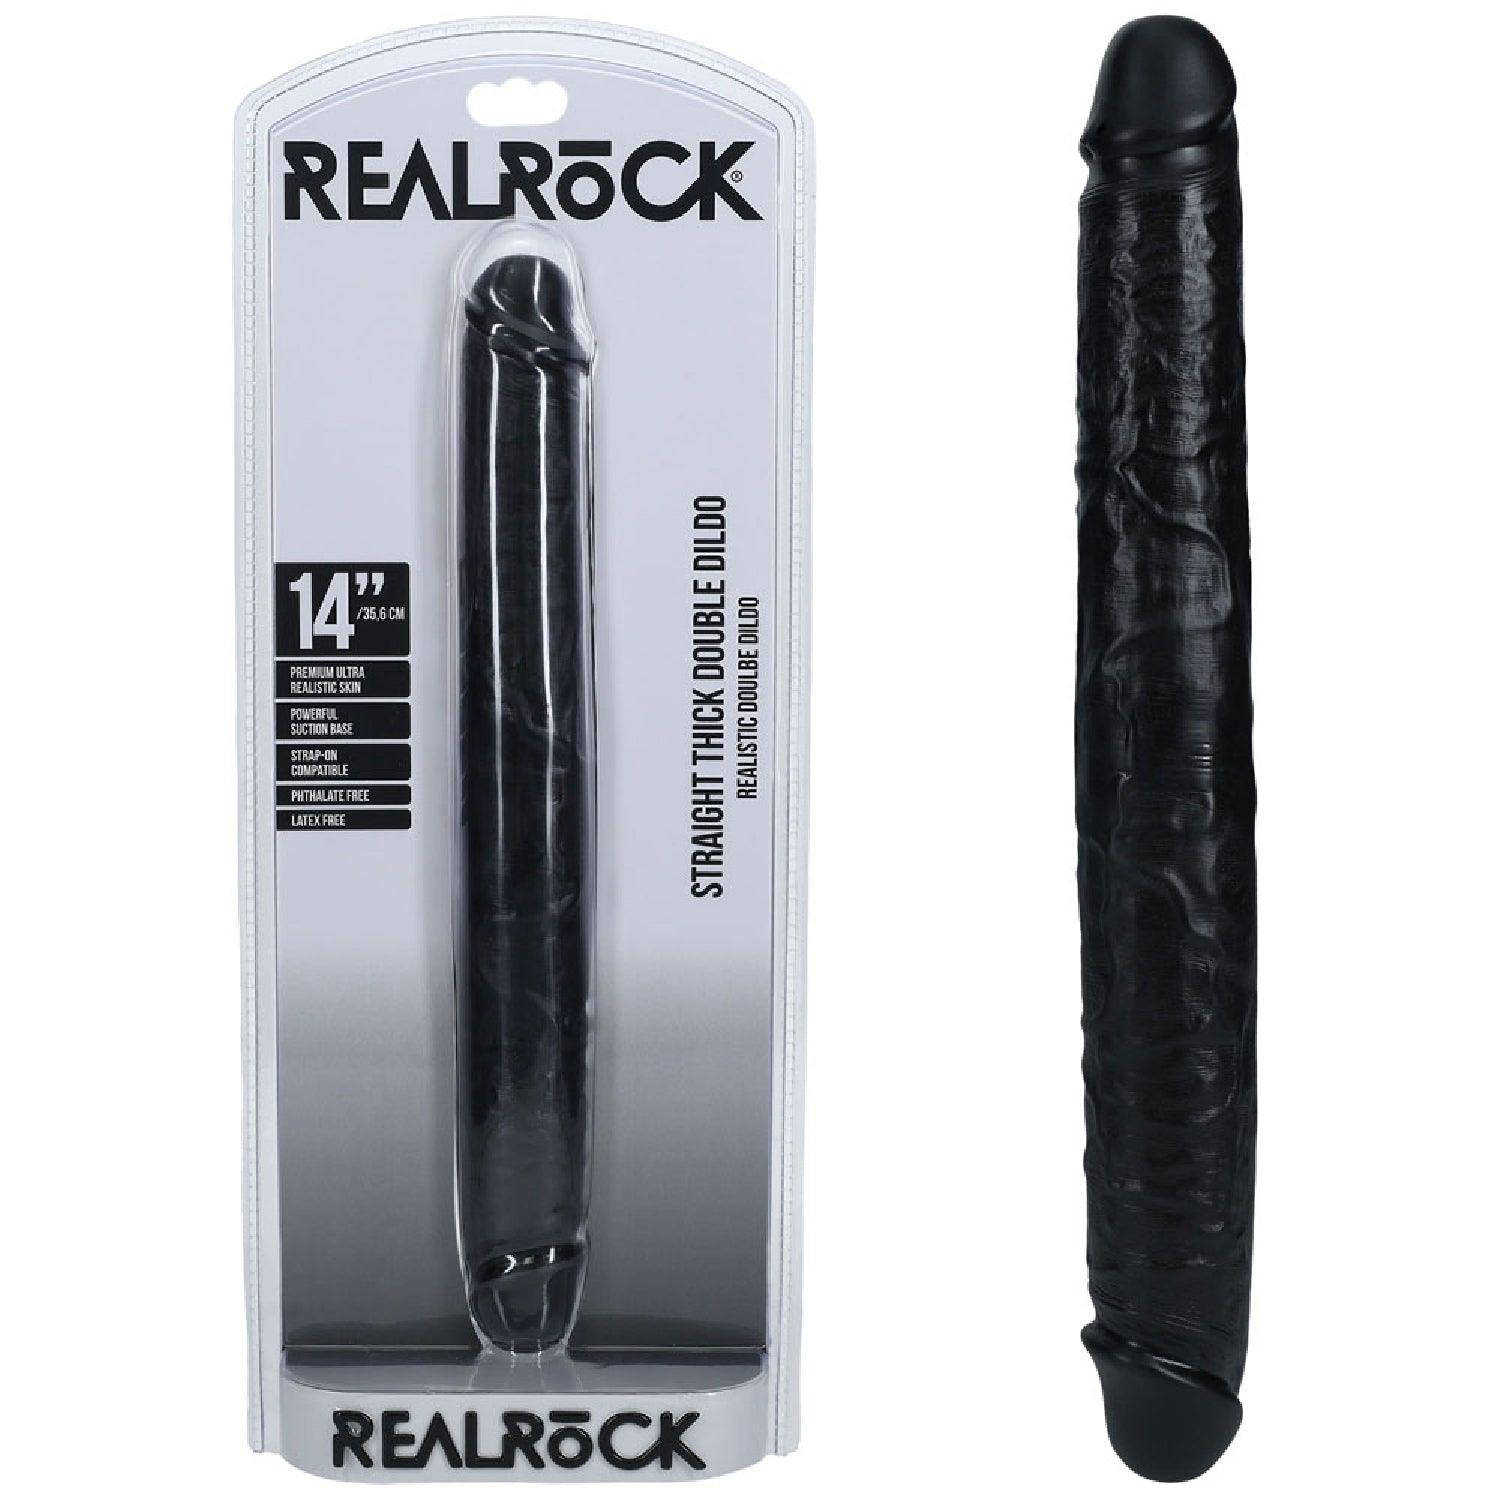 REALROCK 35cm Thick Double Dildo - Black - Take A Peek